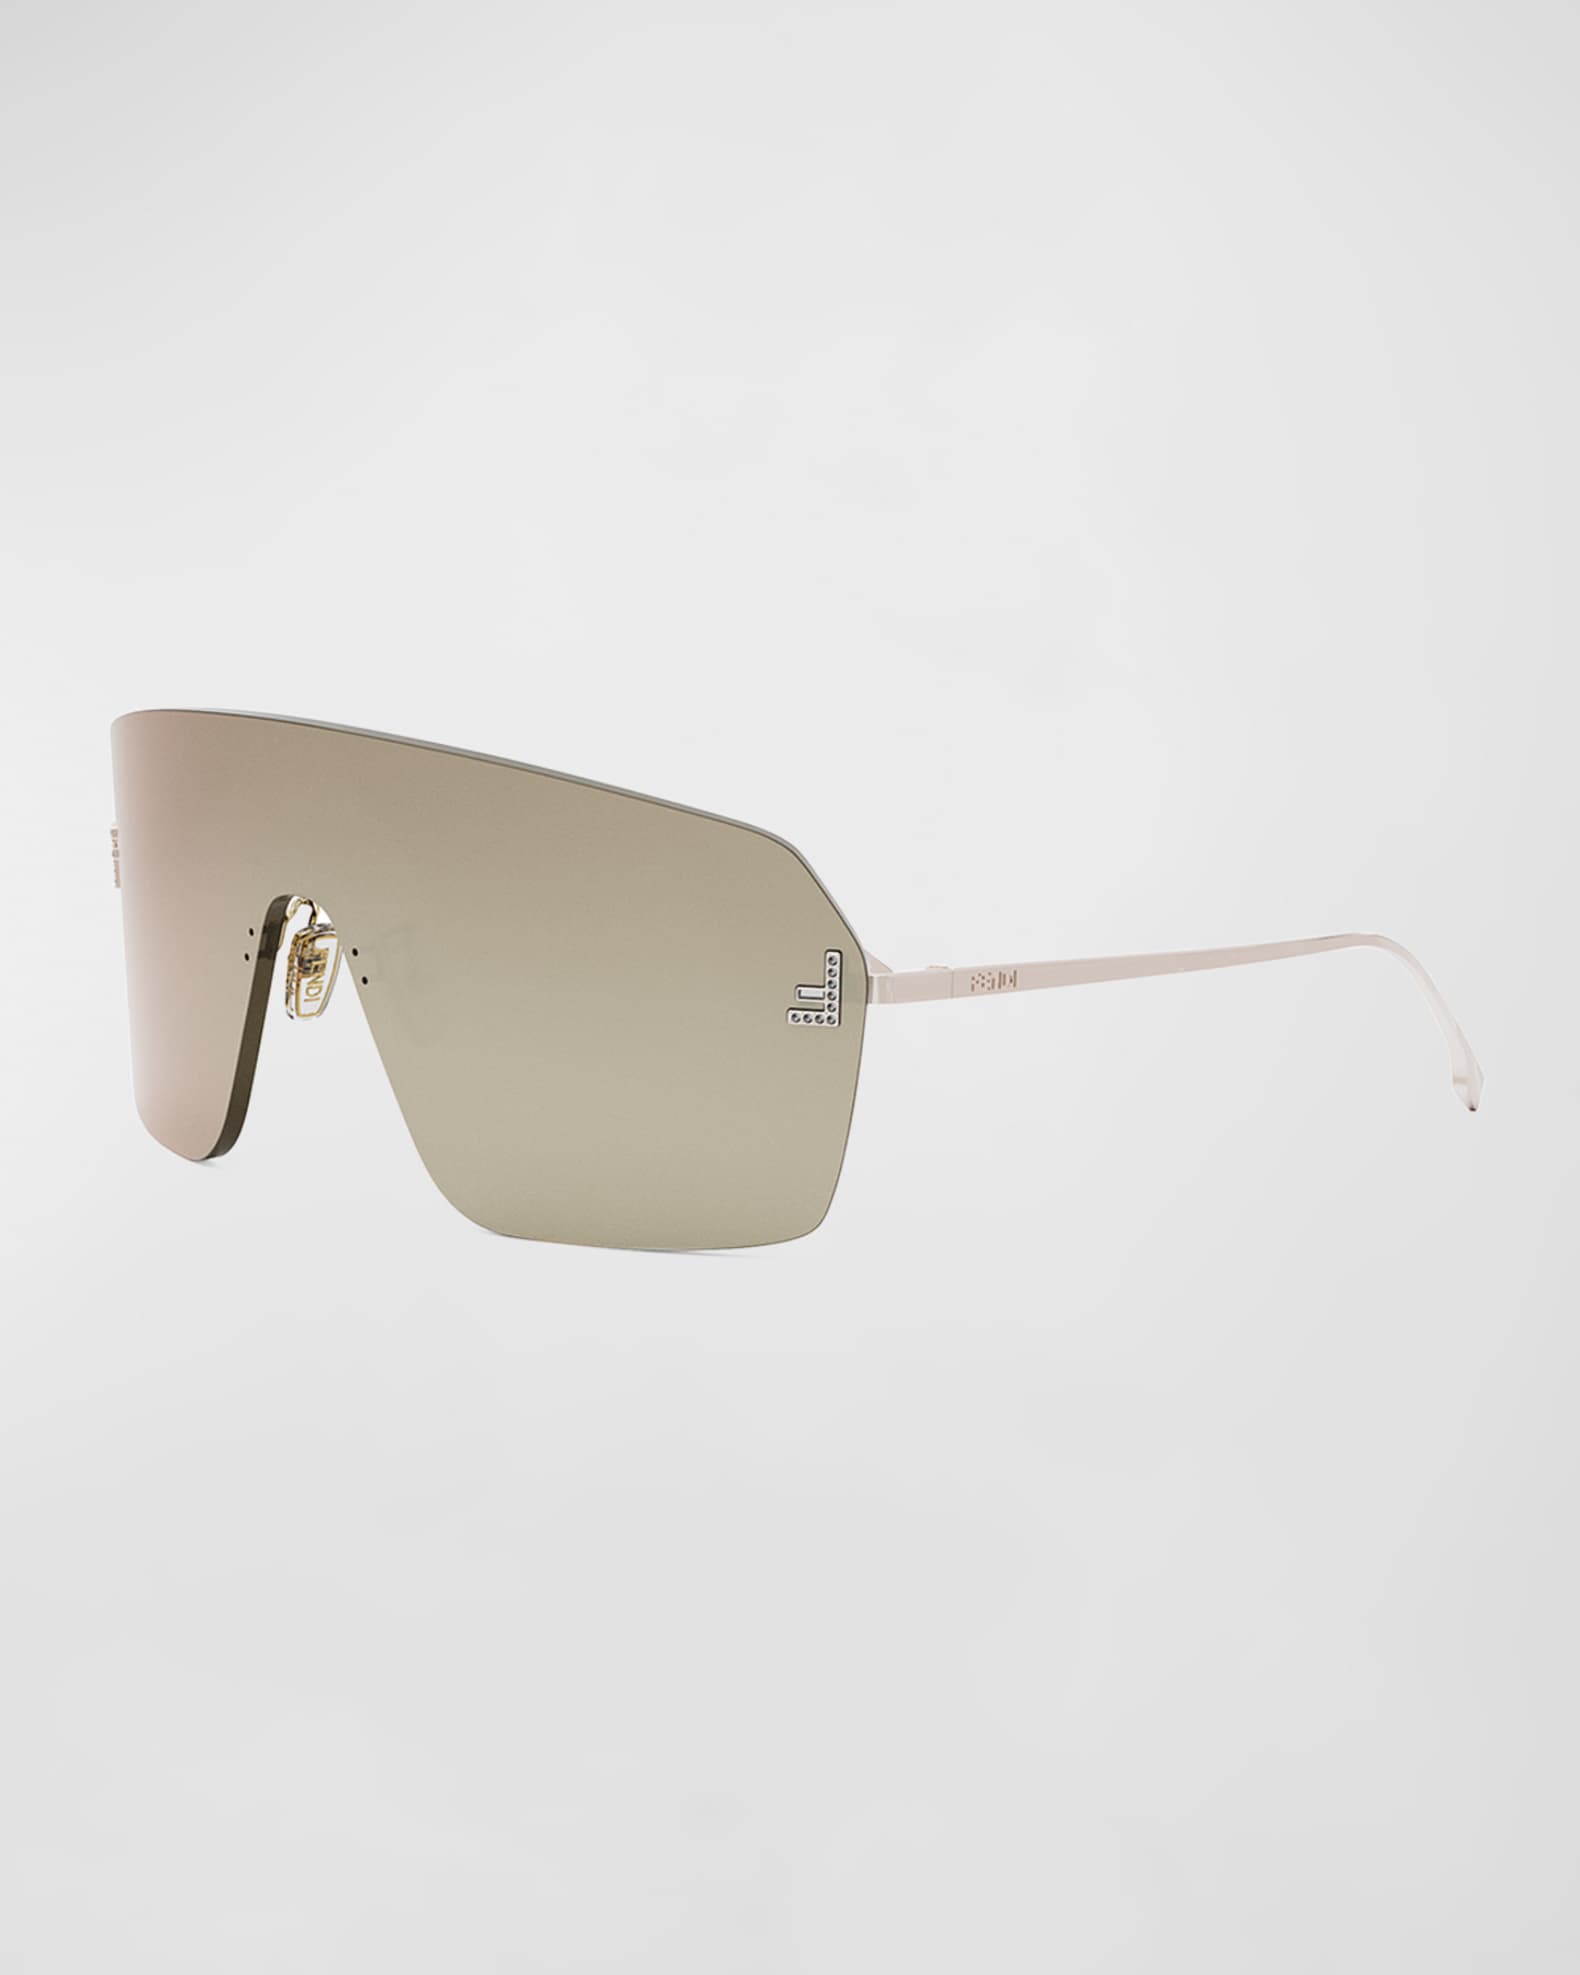 Fendi - Fendi Code - Shield Sunglasses - Silver - Sunglasses